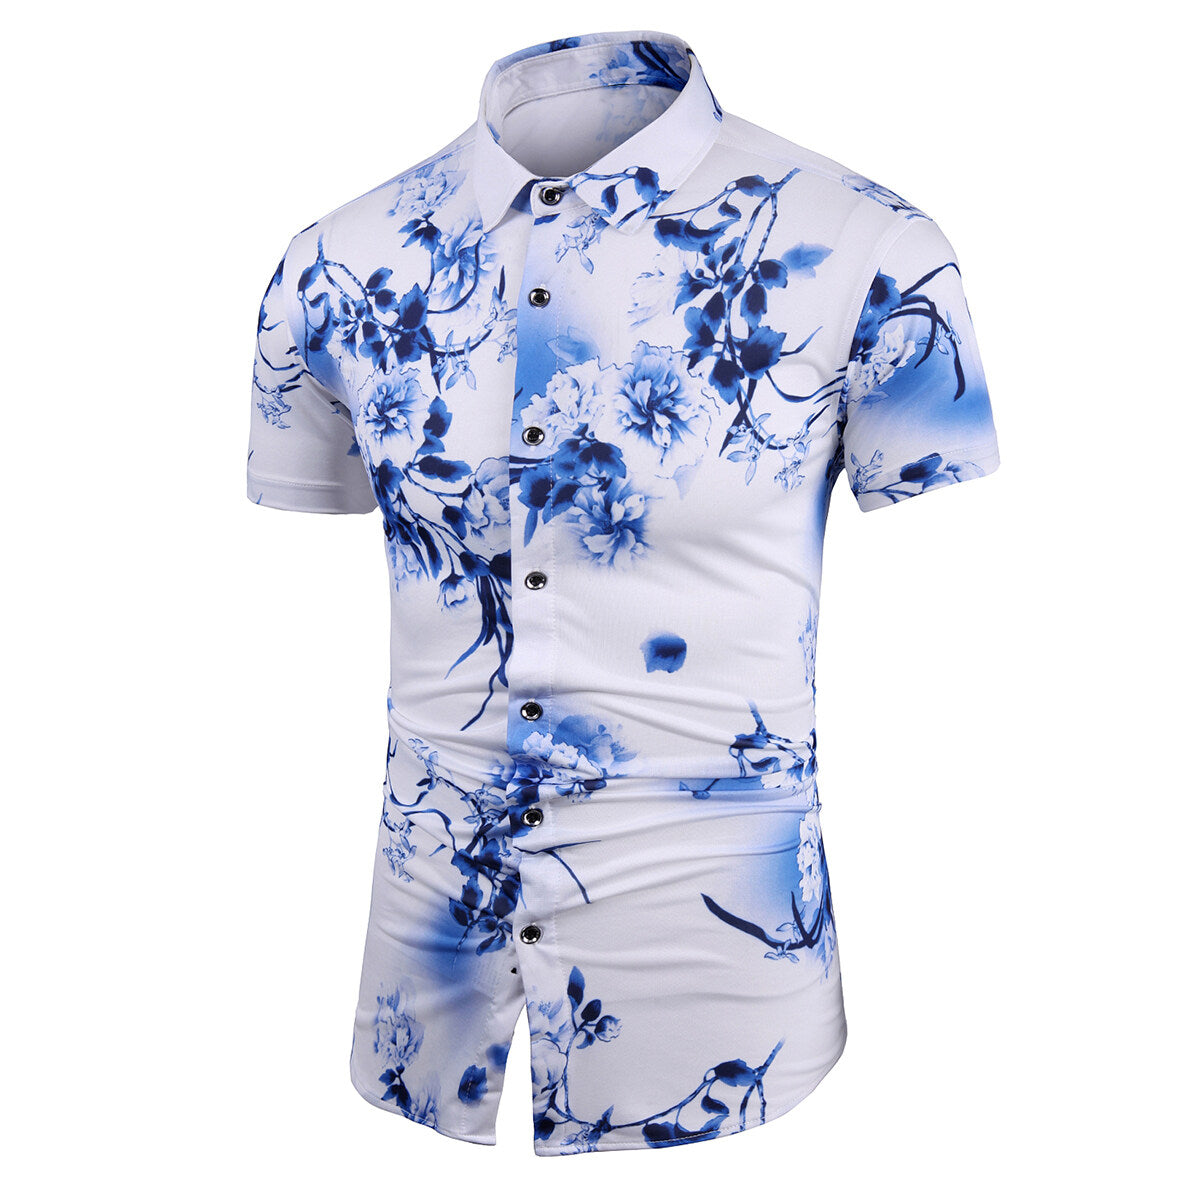 Trendy Men's Printed Short-Sleeve Floral Shirt Aqua Blue